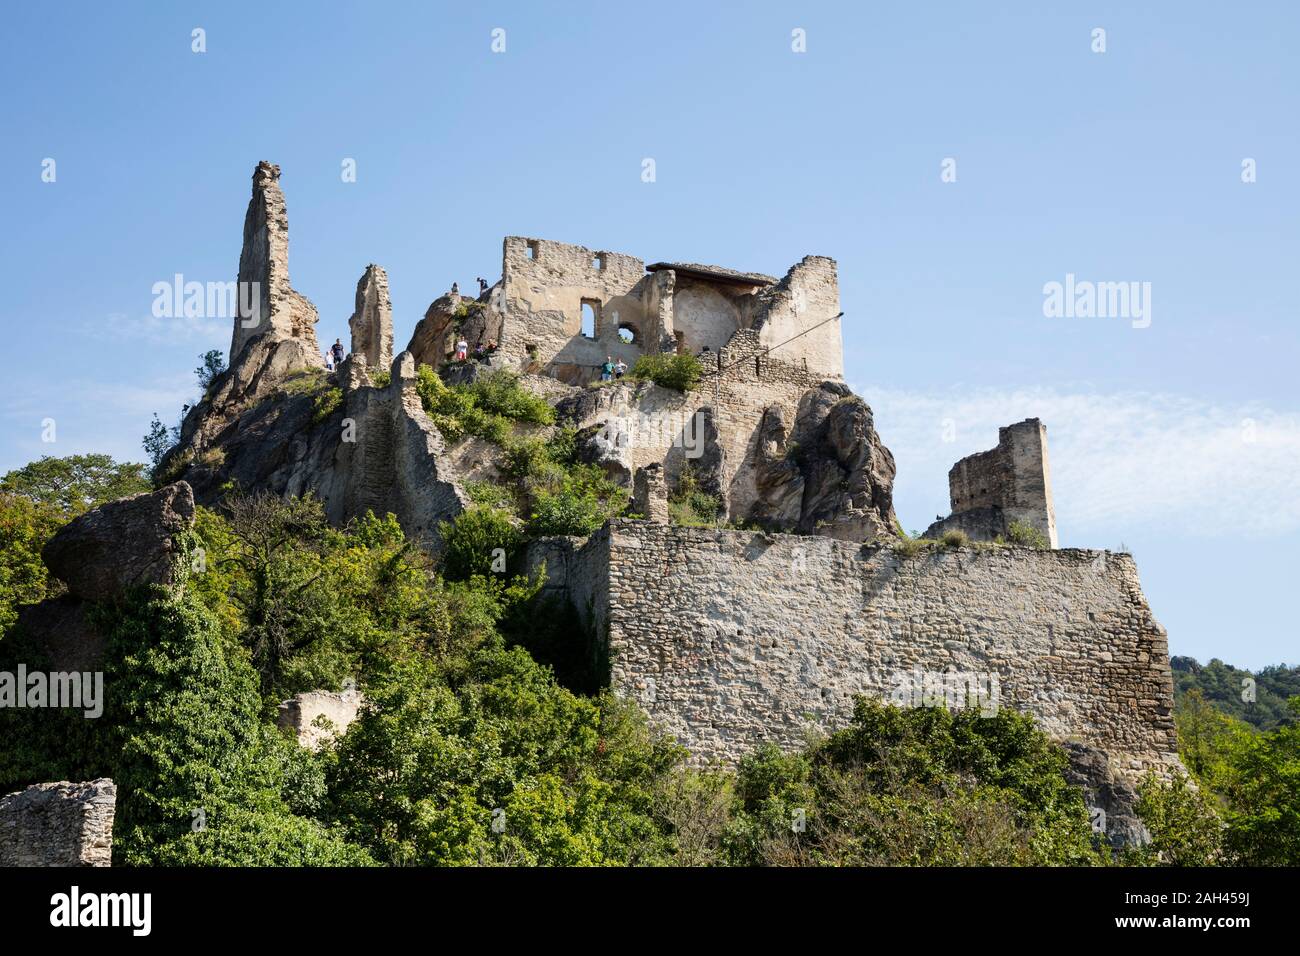 Austria, Lower Austria, Wachau, Durnstein, Durnstein castle ruins Stock Photo